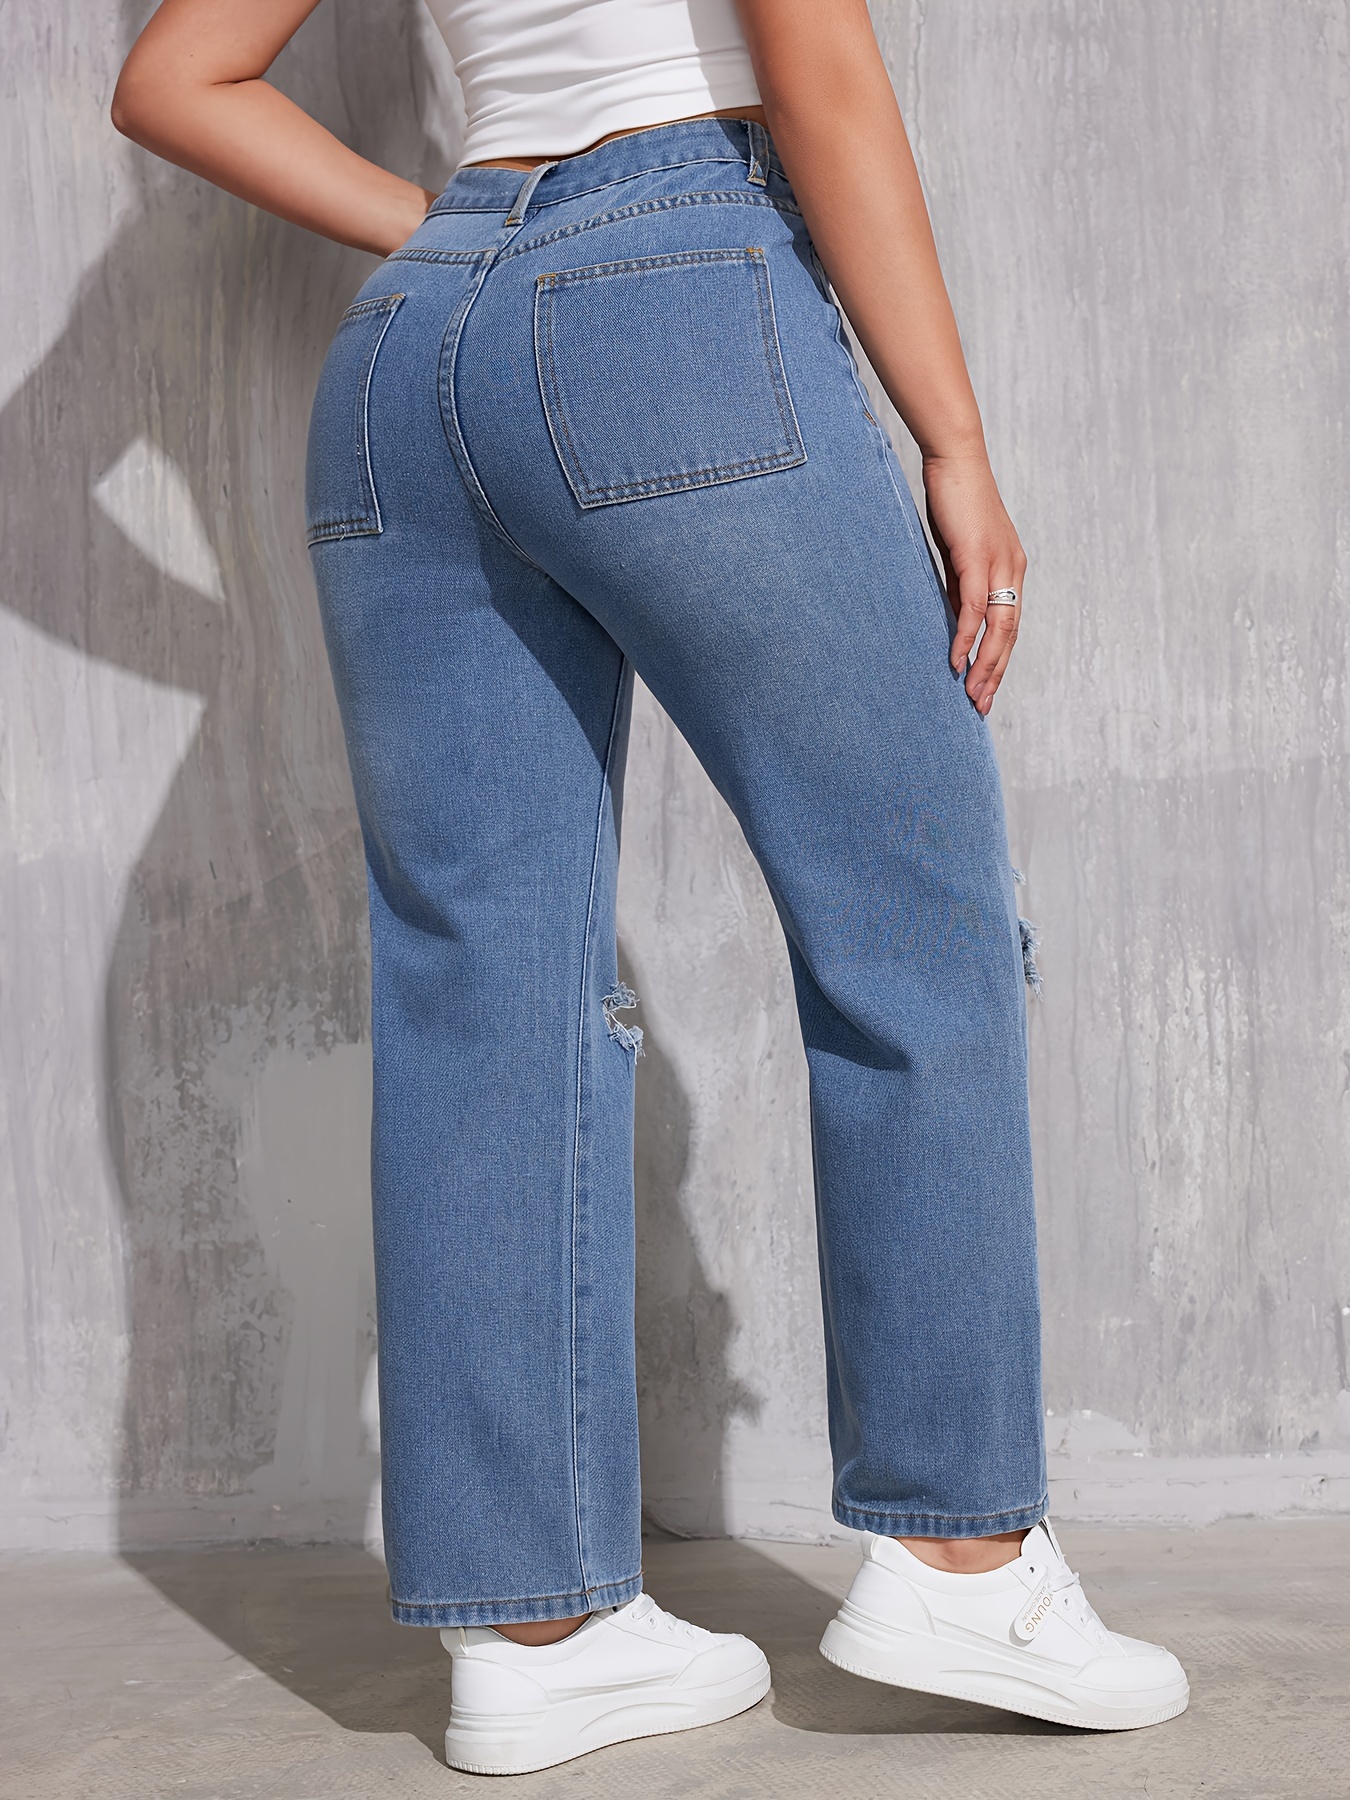 Jeans rectos con agujeros rasgados, pantalones de mezclilla casuales  sueltos con bolsillos inclinados, jeans de mezclilla y ropa de mujer